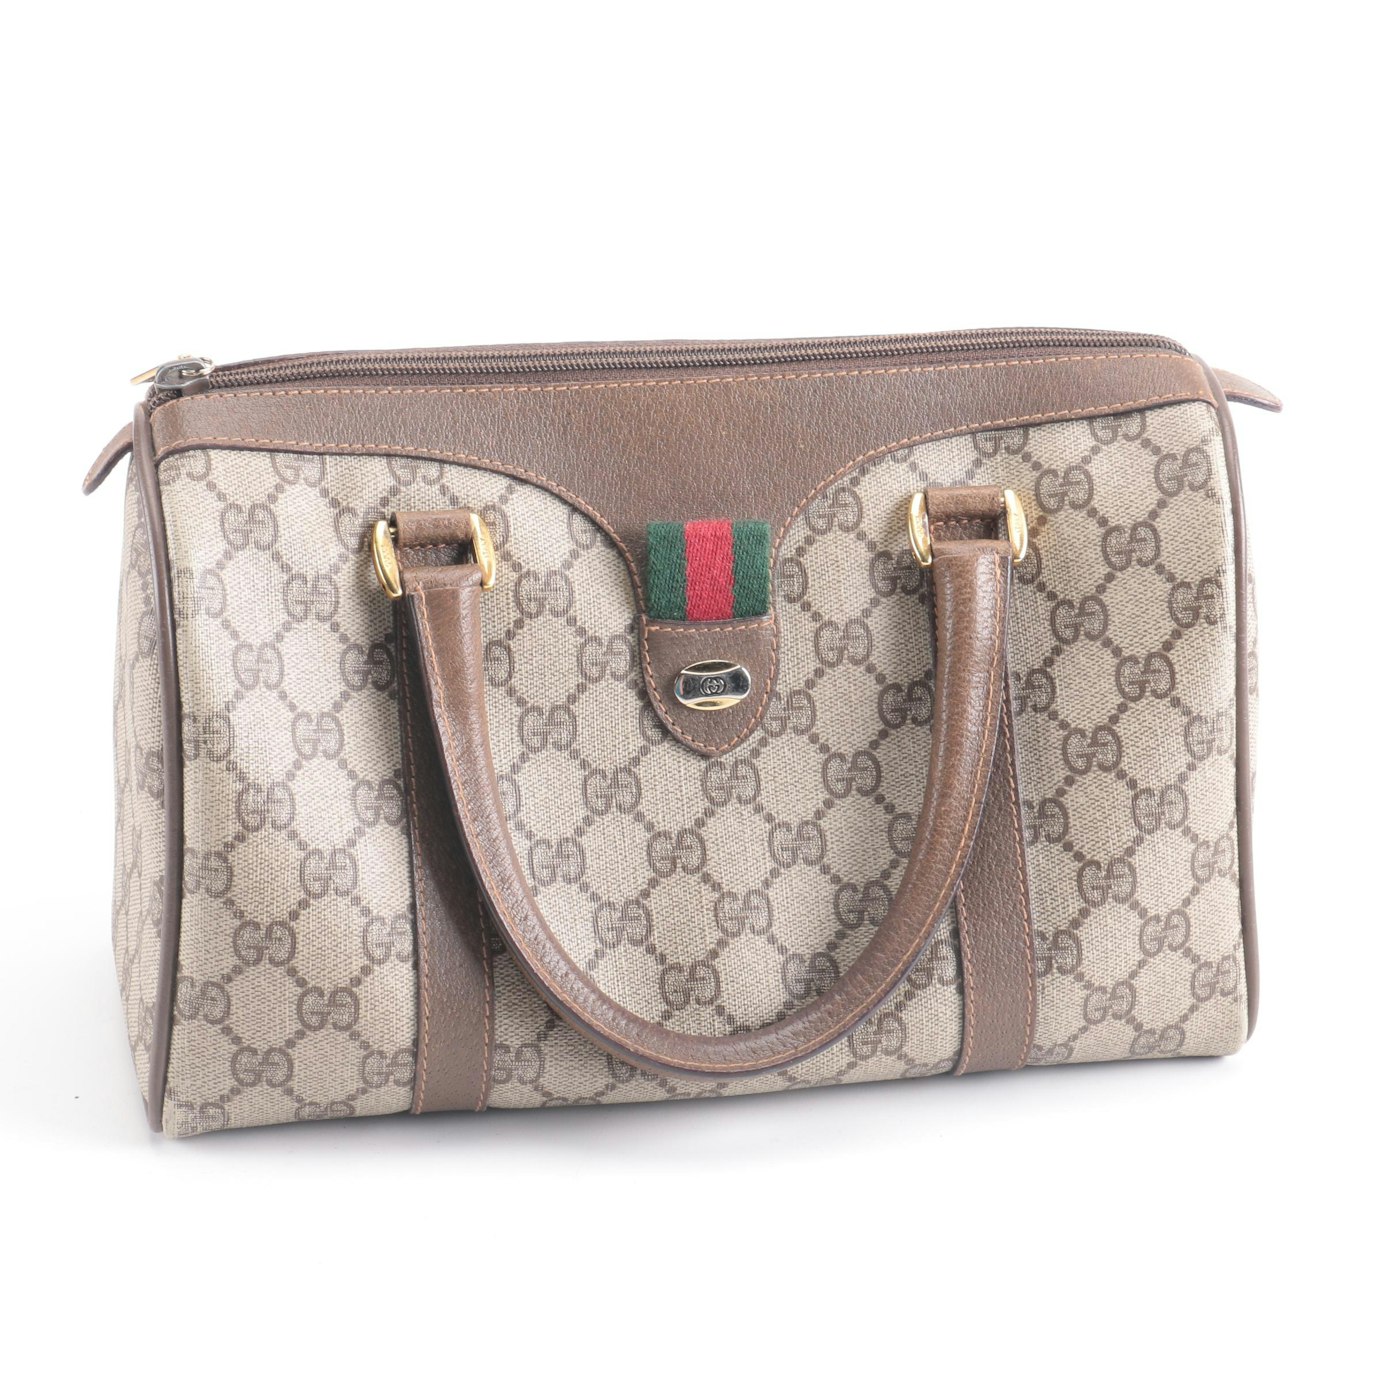 Vintage Gucci Monogram Handbag : EBTH